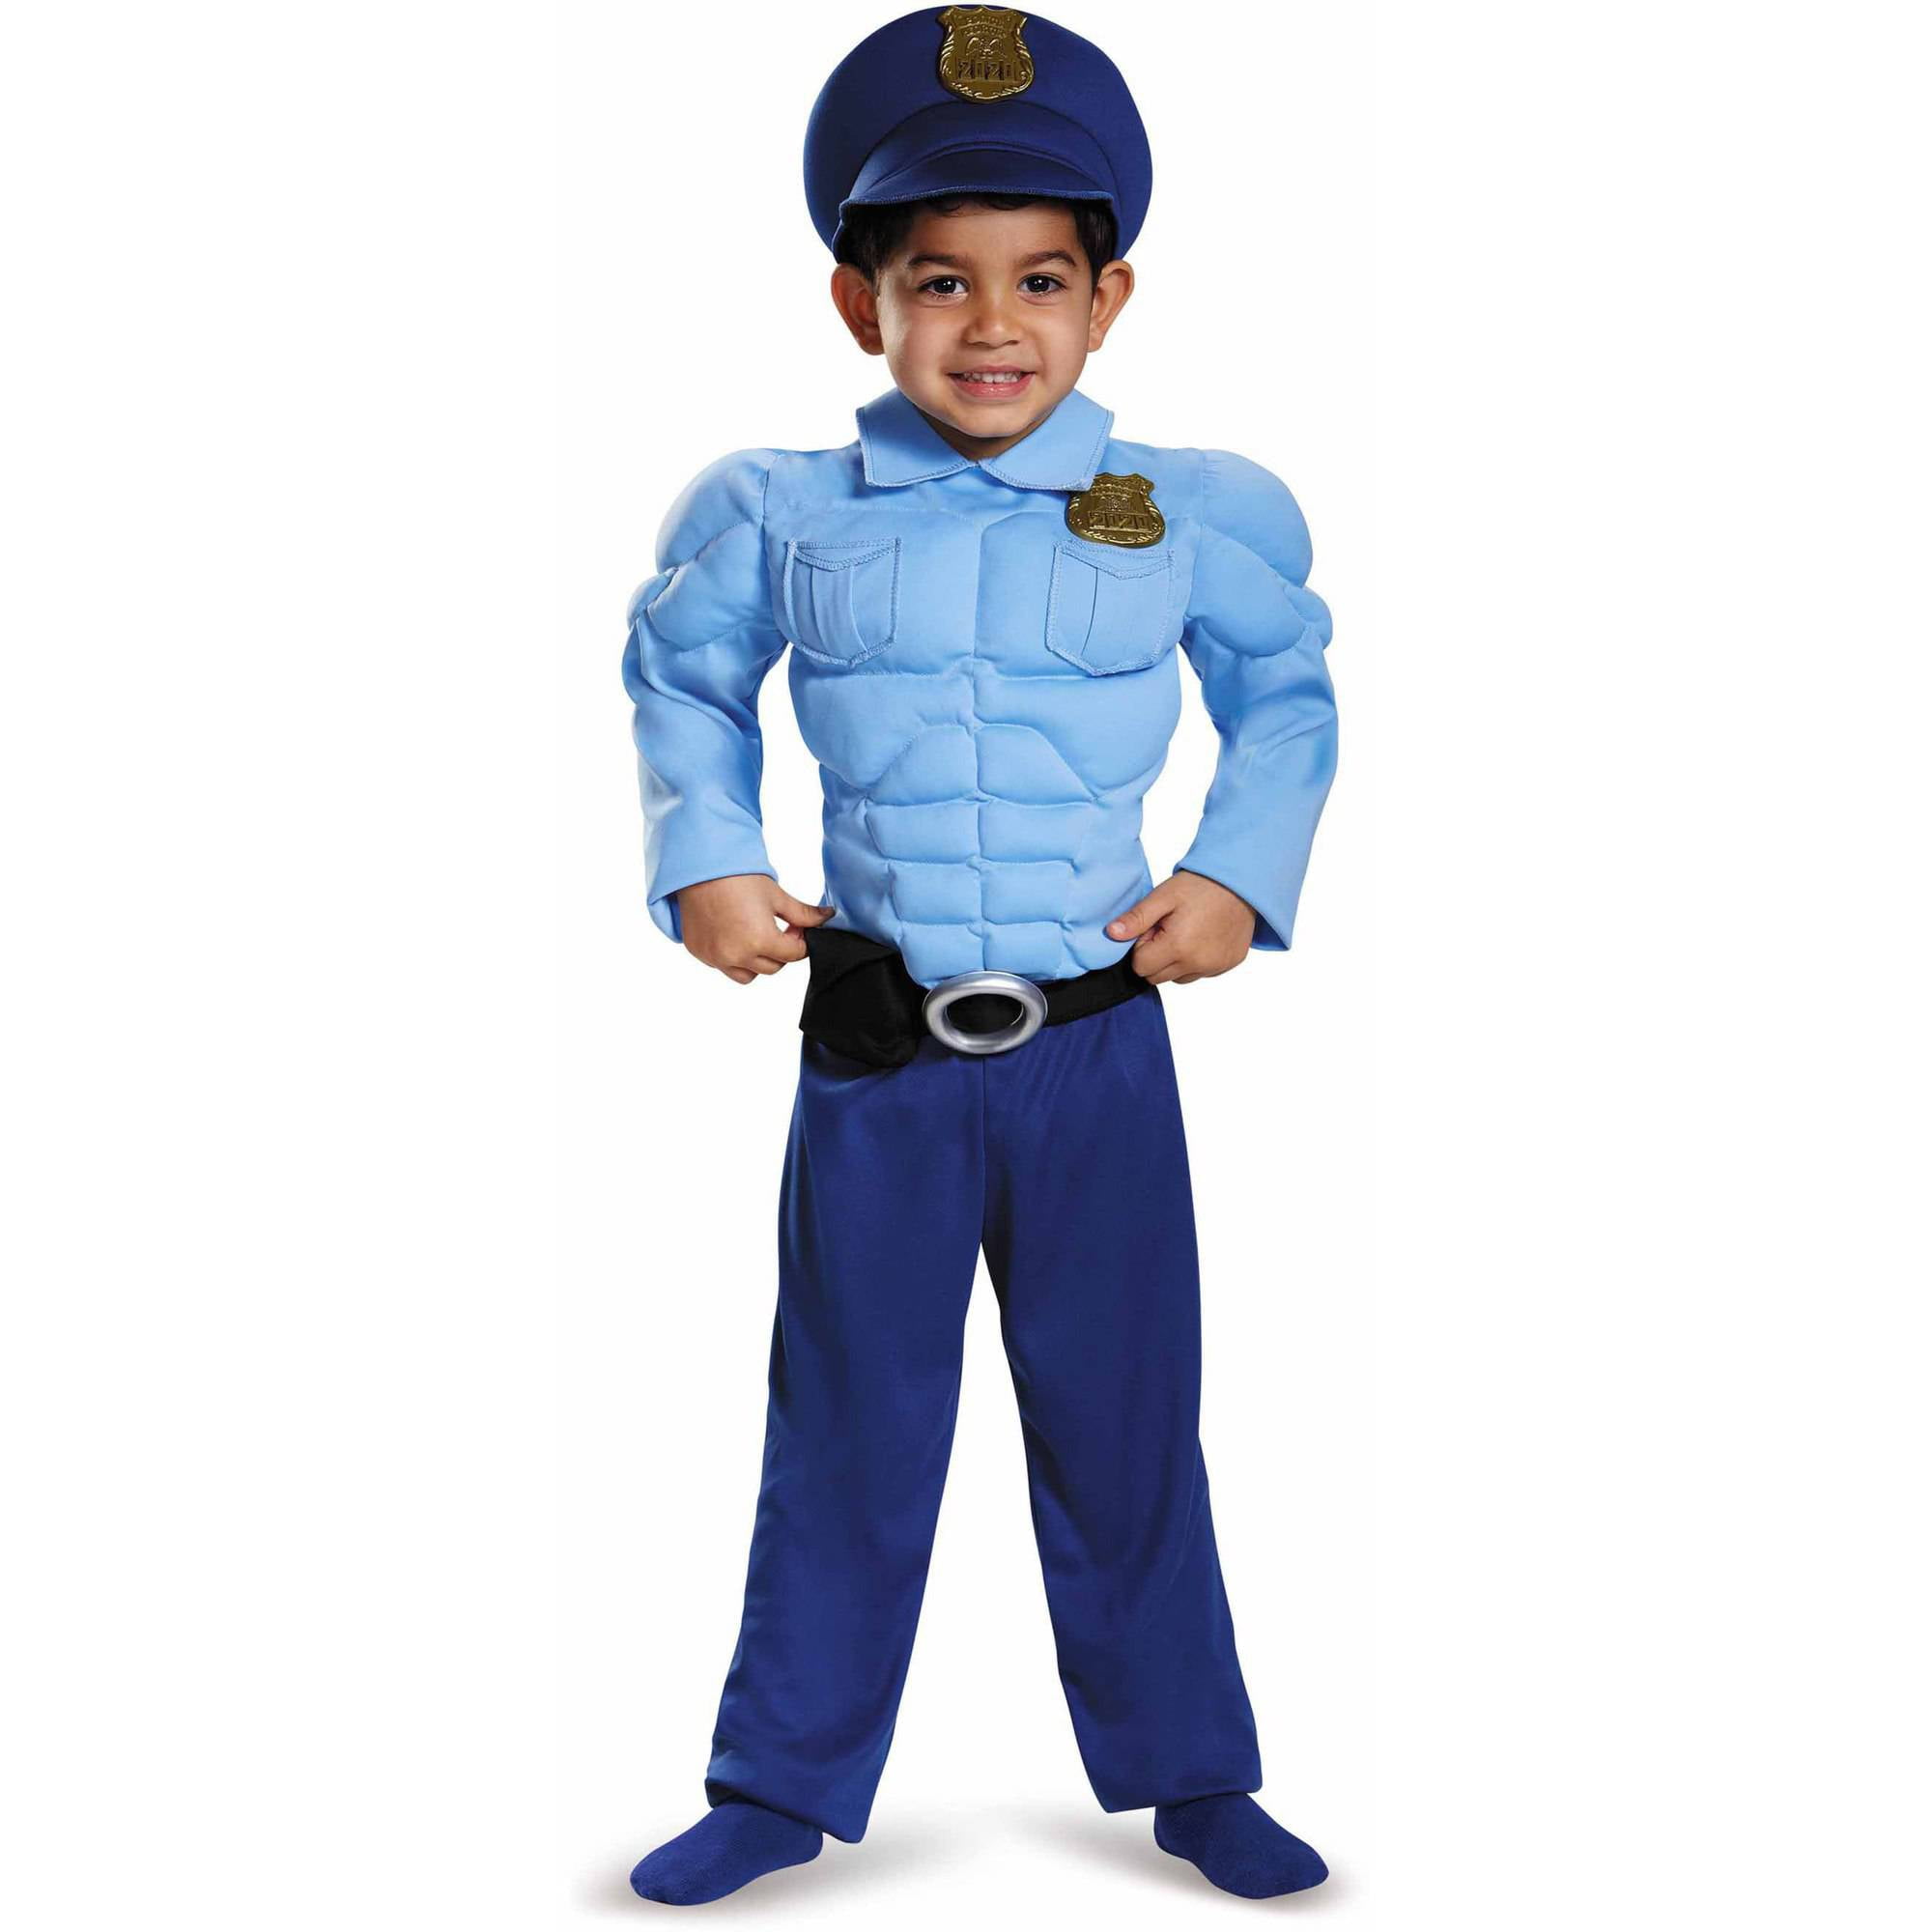 Мальчик милиционер. Ребенок в костюме милиционера. Костюм полицейский мальчик. Костюм милиционера для мальчика. Полицейская форма для детей.